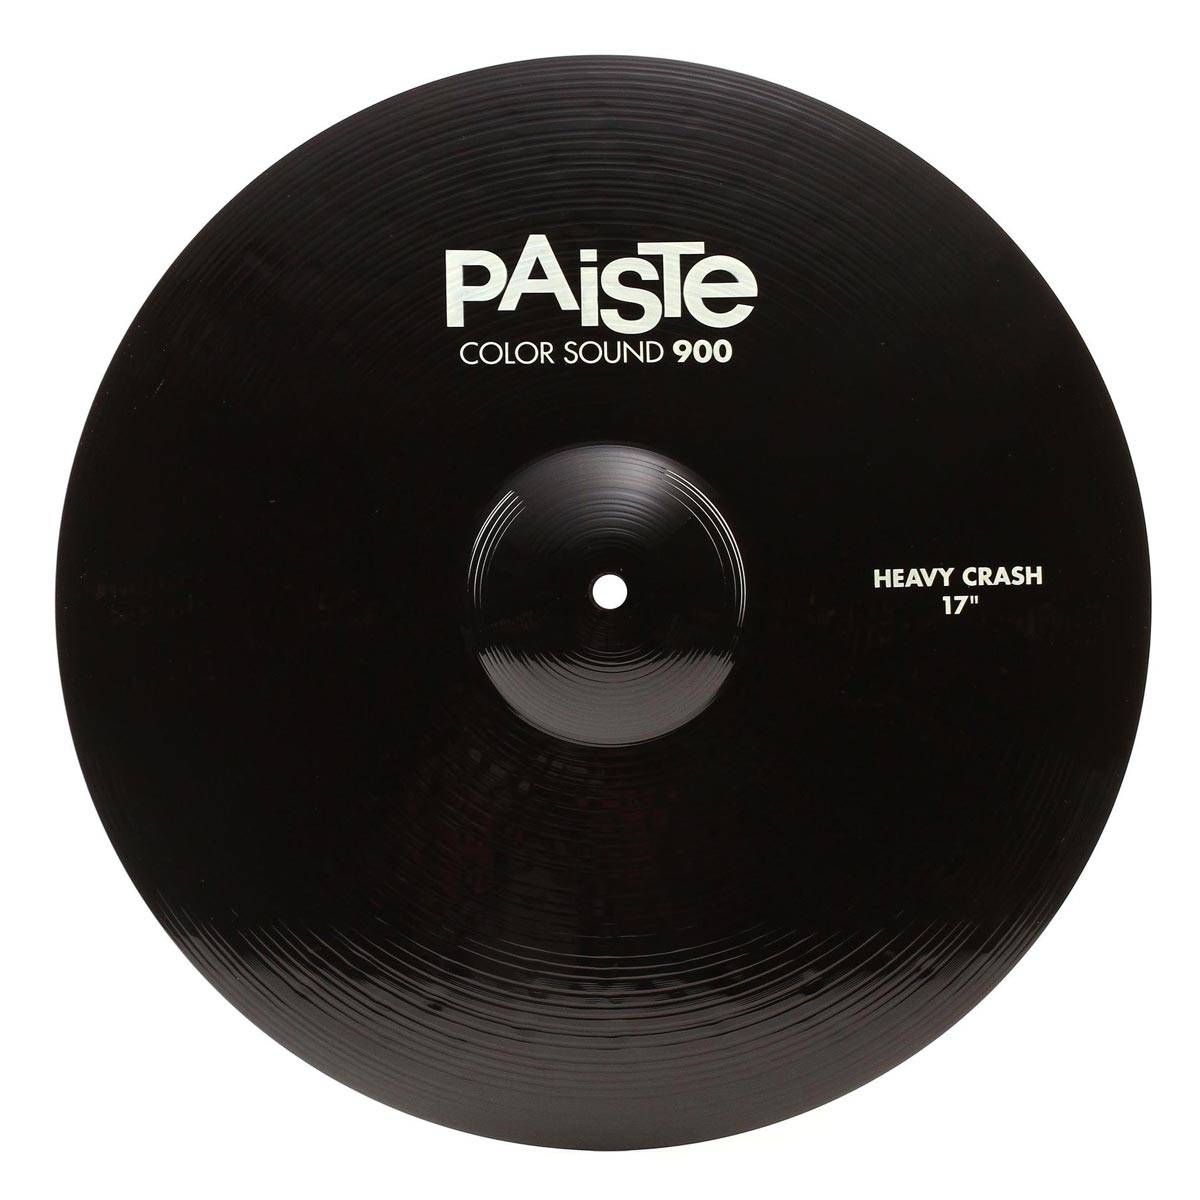 PAISTE 900 Color Sound 17'' Black Heavy Crash Cymbal